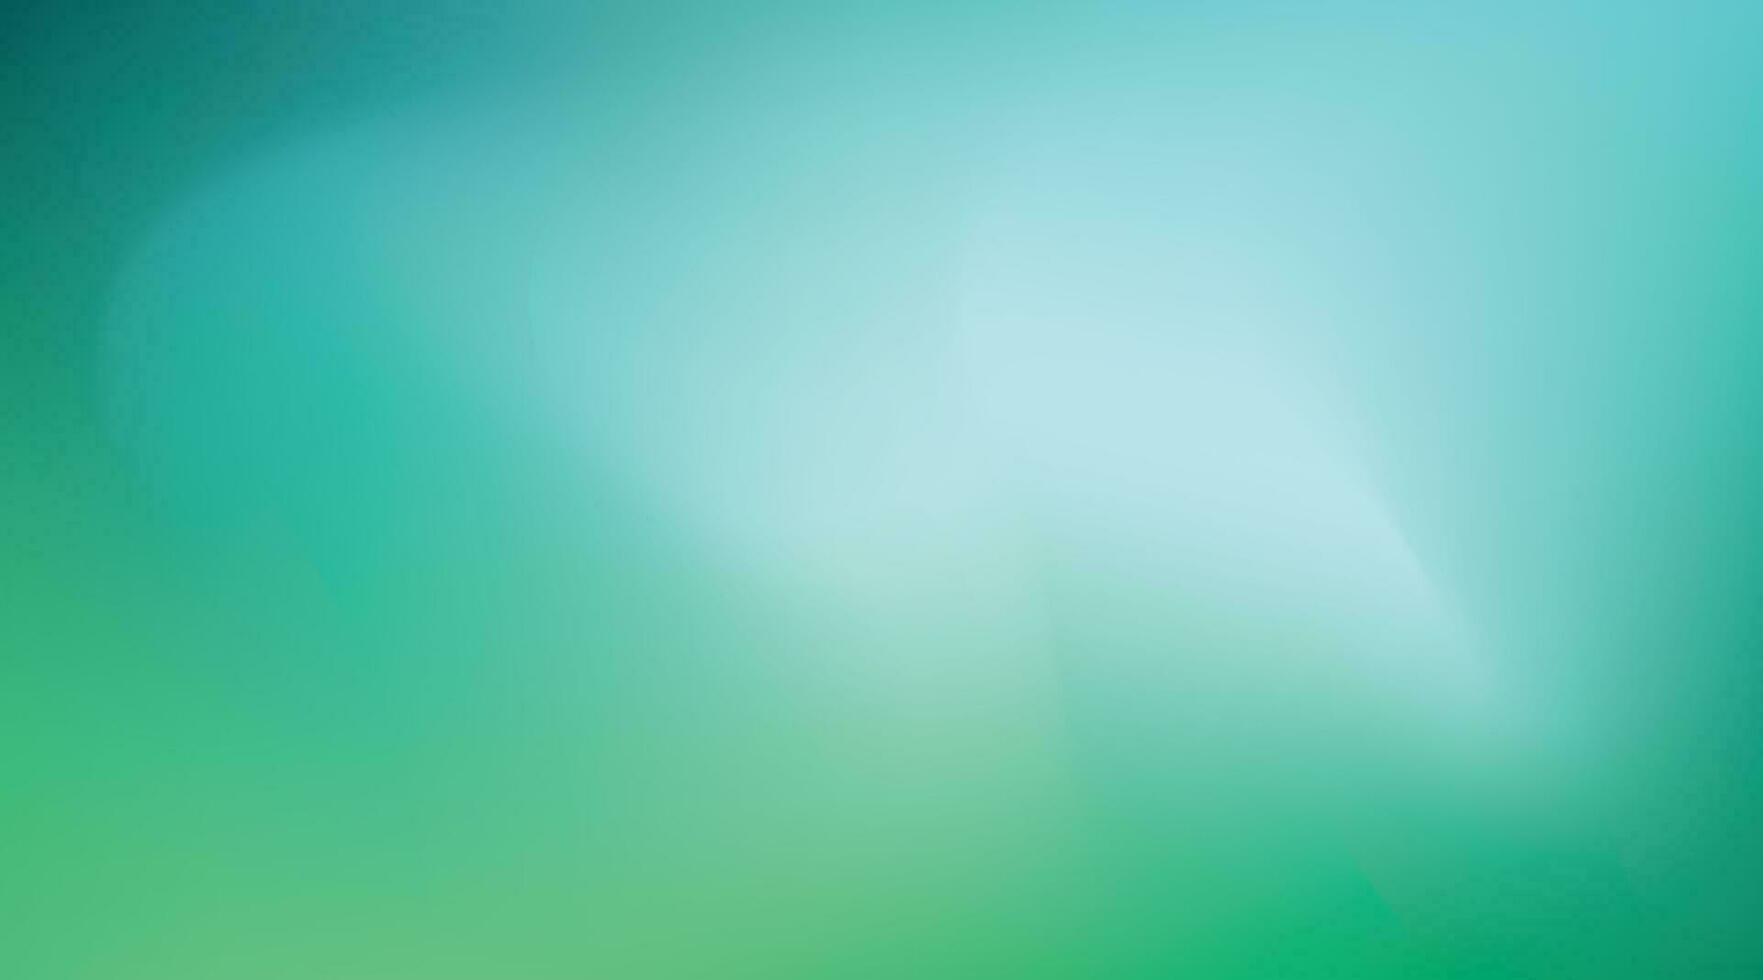 abstrakt grön och blå suddig lutning bakgrund. ljus Färg natur fläck mönster. vektor eco illustration. ekologi, sommar, vår, gräs, mjuk begrepp. grafisk design för baner eller affisch. eps 10